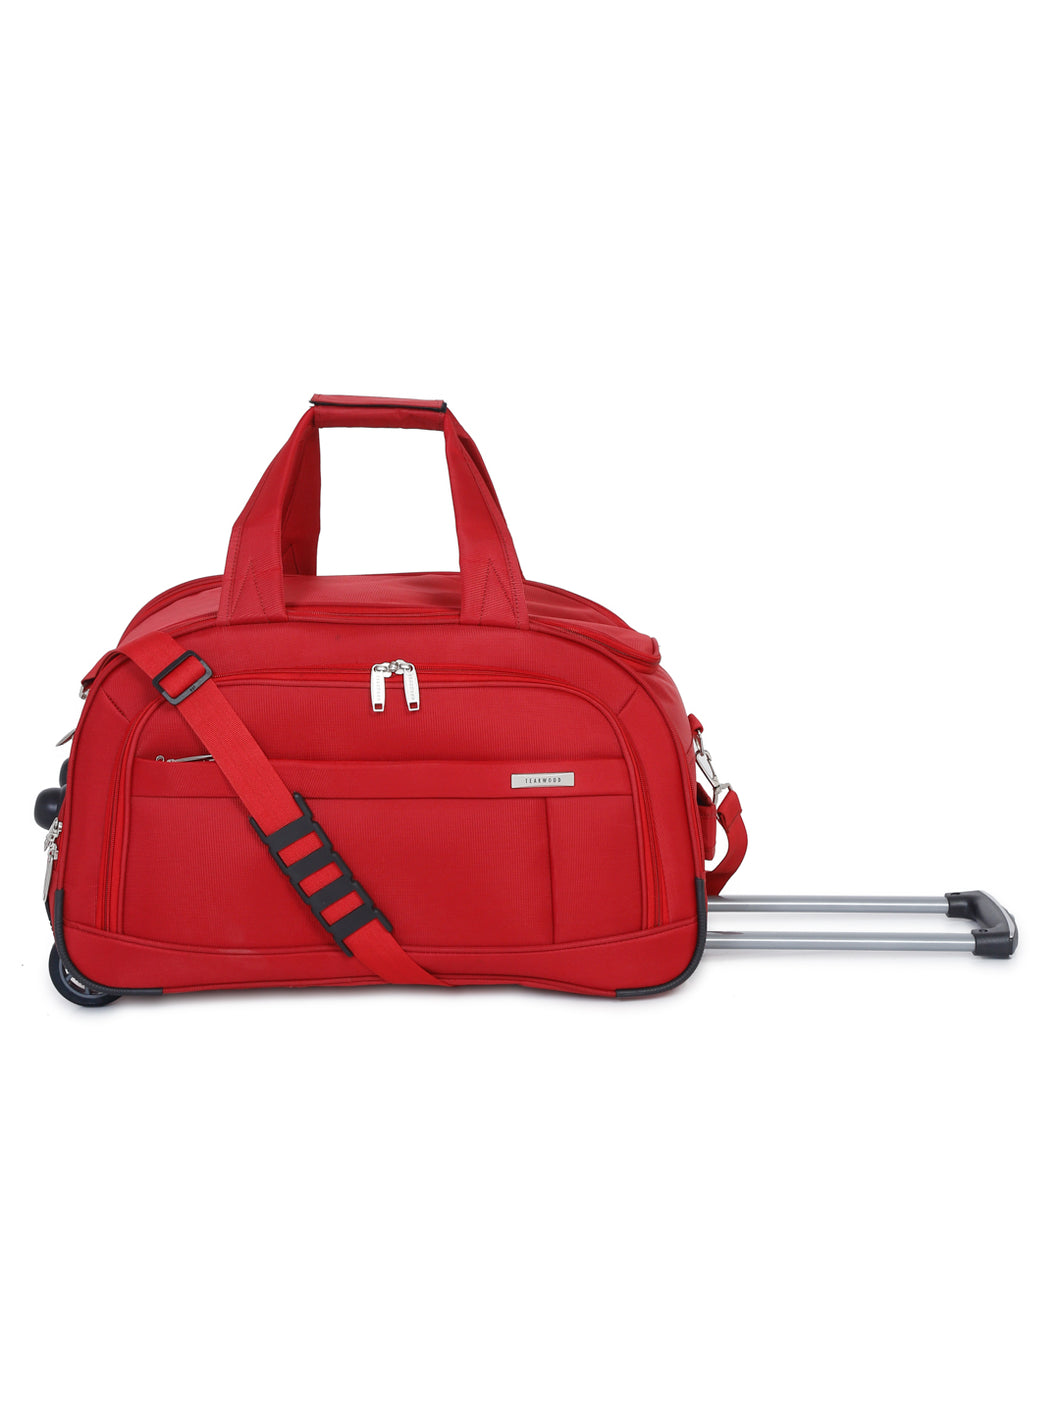 Teakwood Medium Duffle Trolley Bag - Red